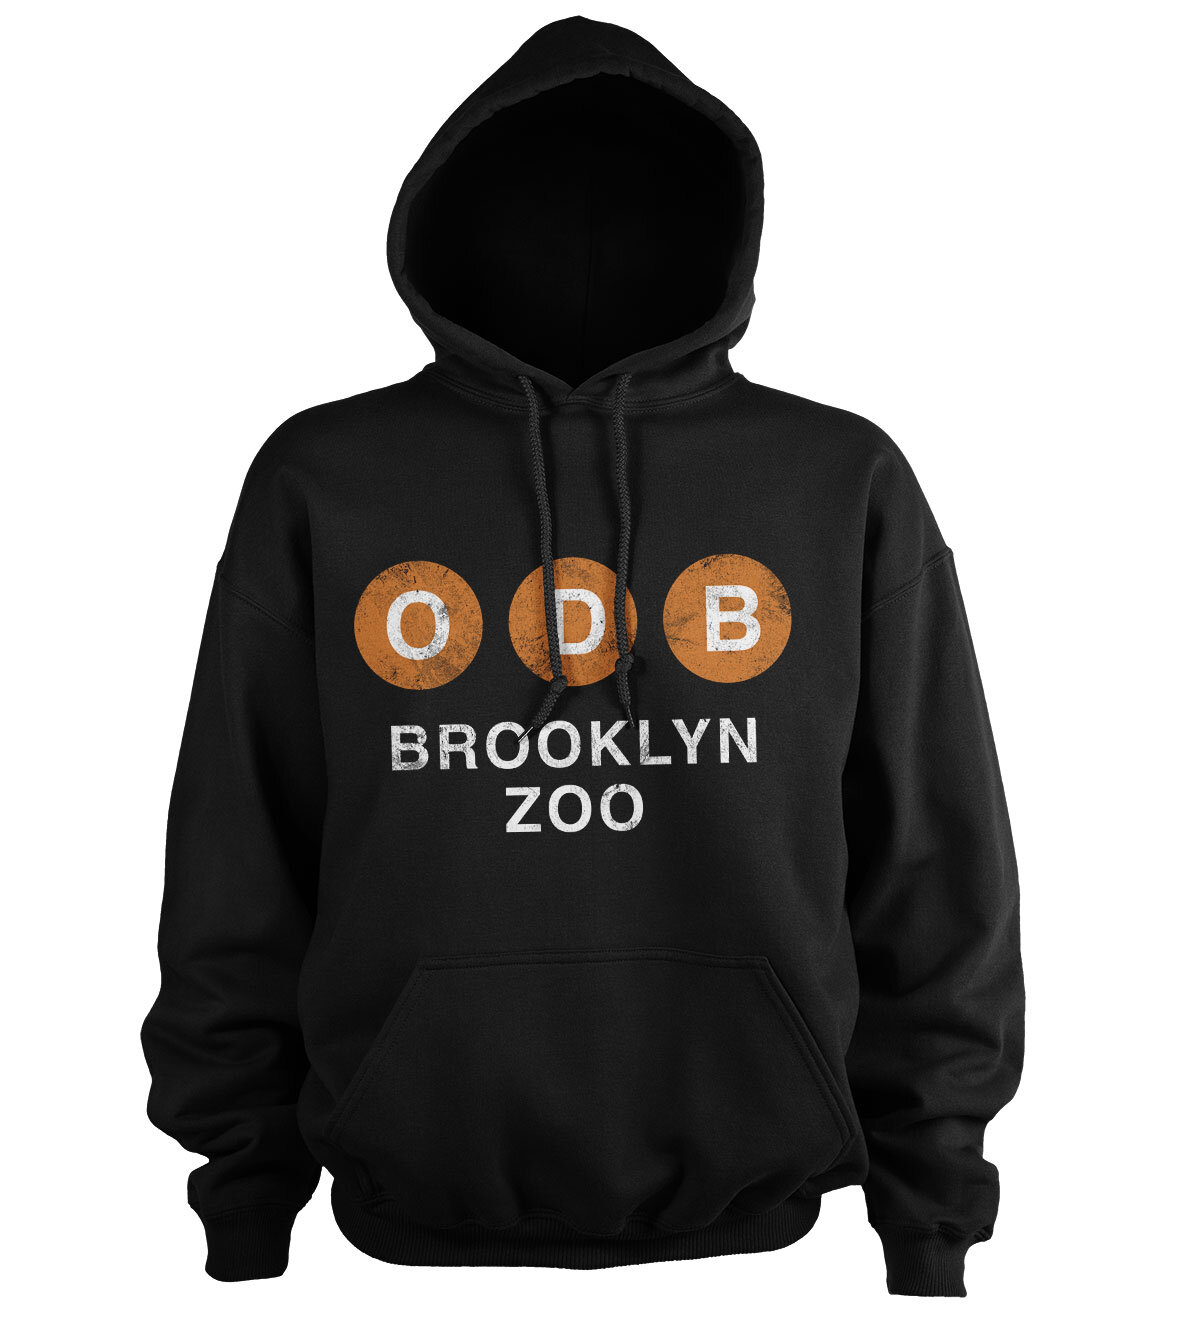 ODB Brooklyn Zoo Hoodie